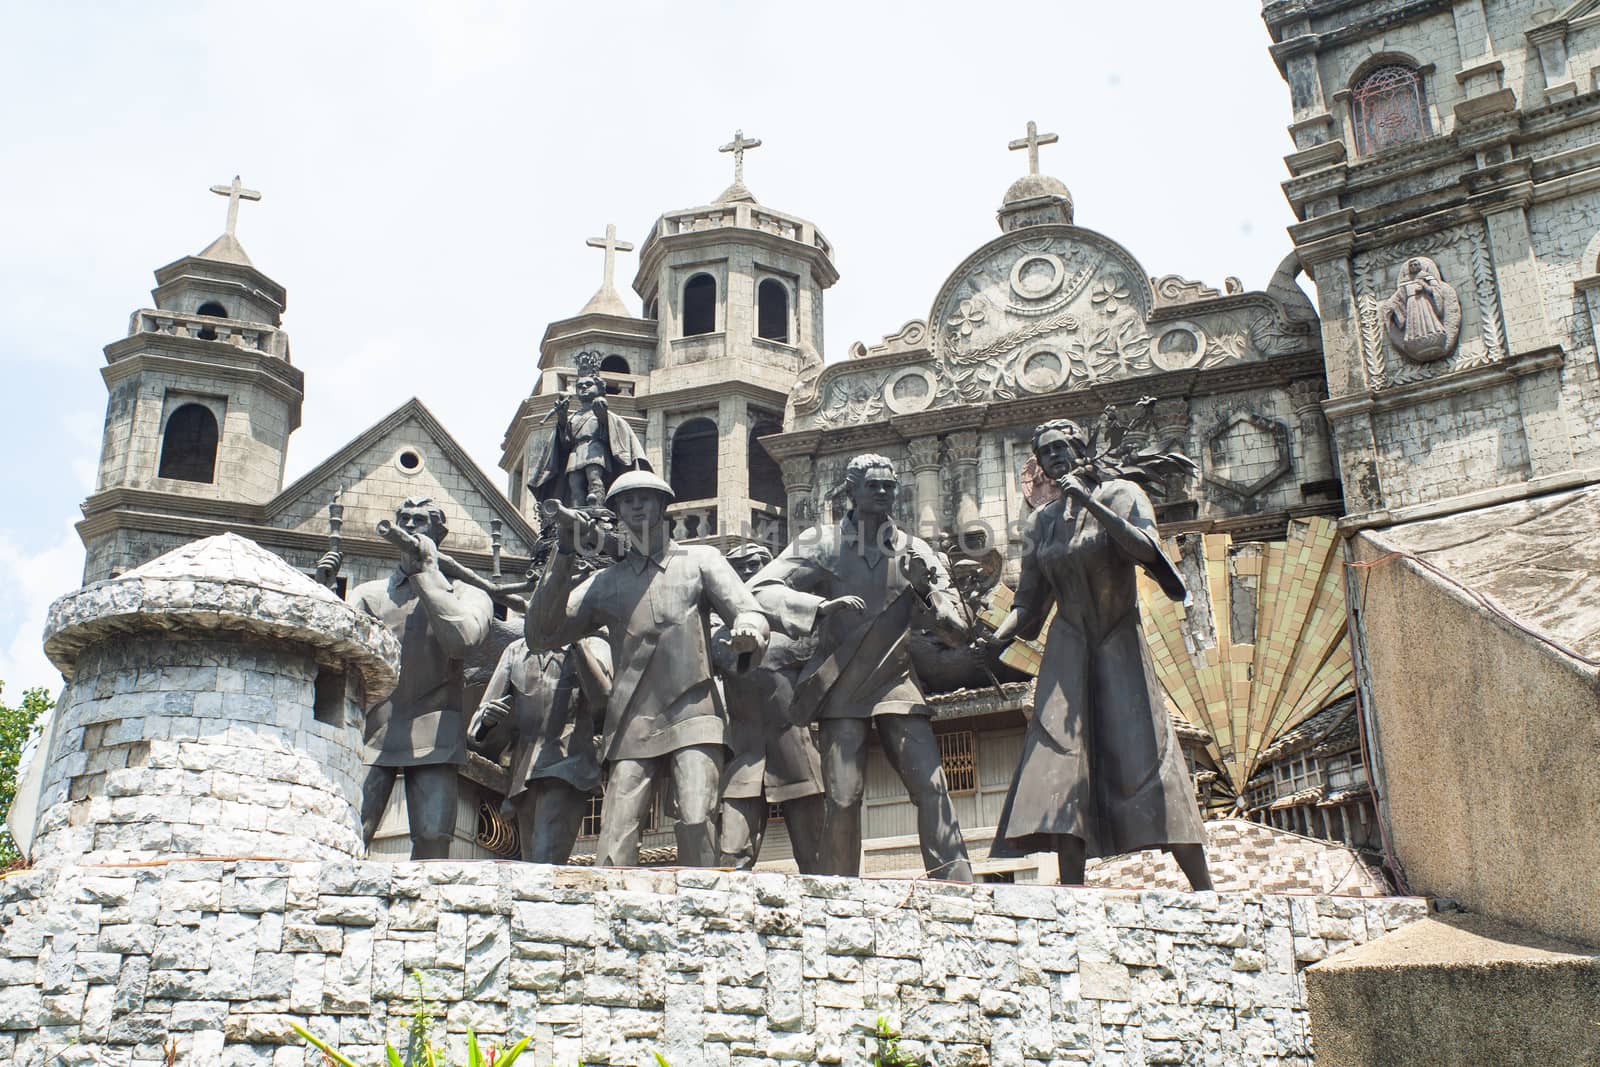 Street with sculptures in Cebu by Vanzyst